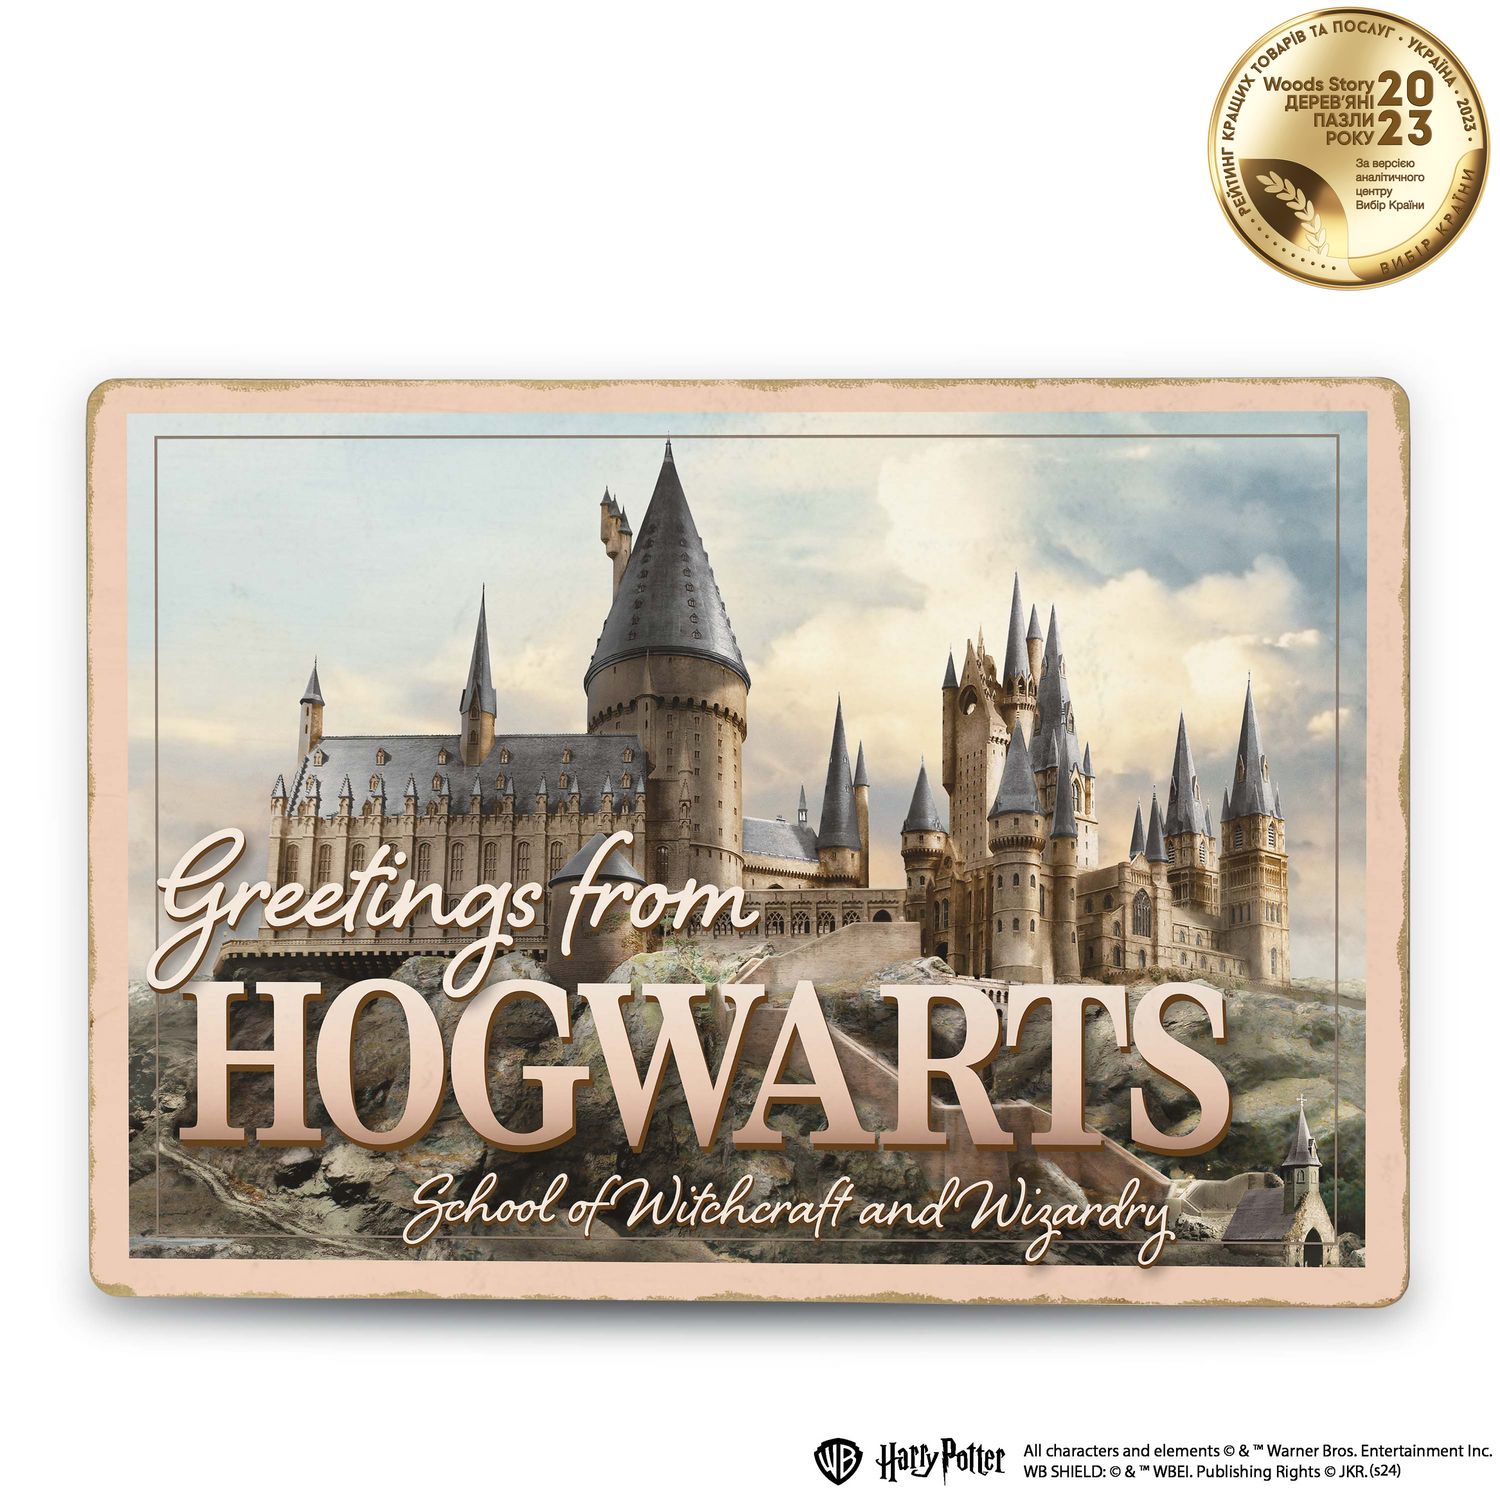 Дерев'яний постер Гаррі Поттер Замок Гоґвортс™